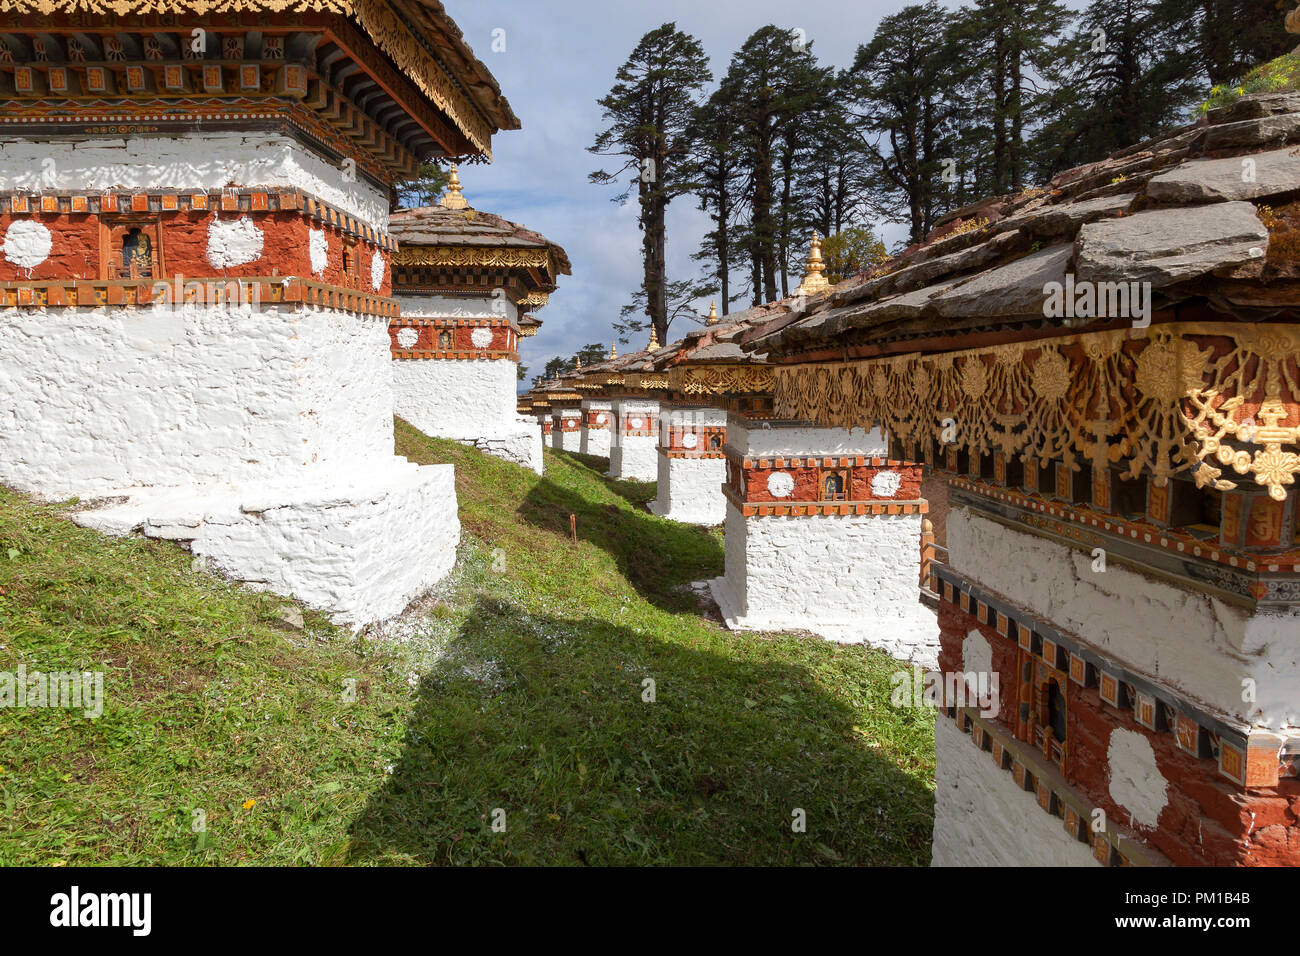 108 stupas (chortens) at Dochu La pass. Bhutan Stock Photo